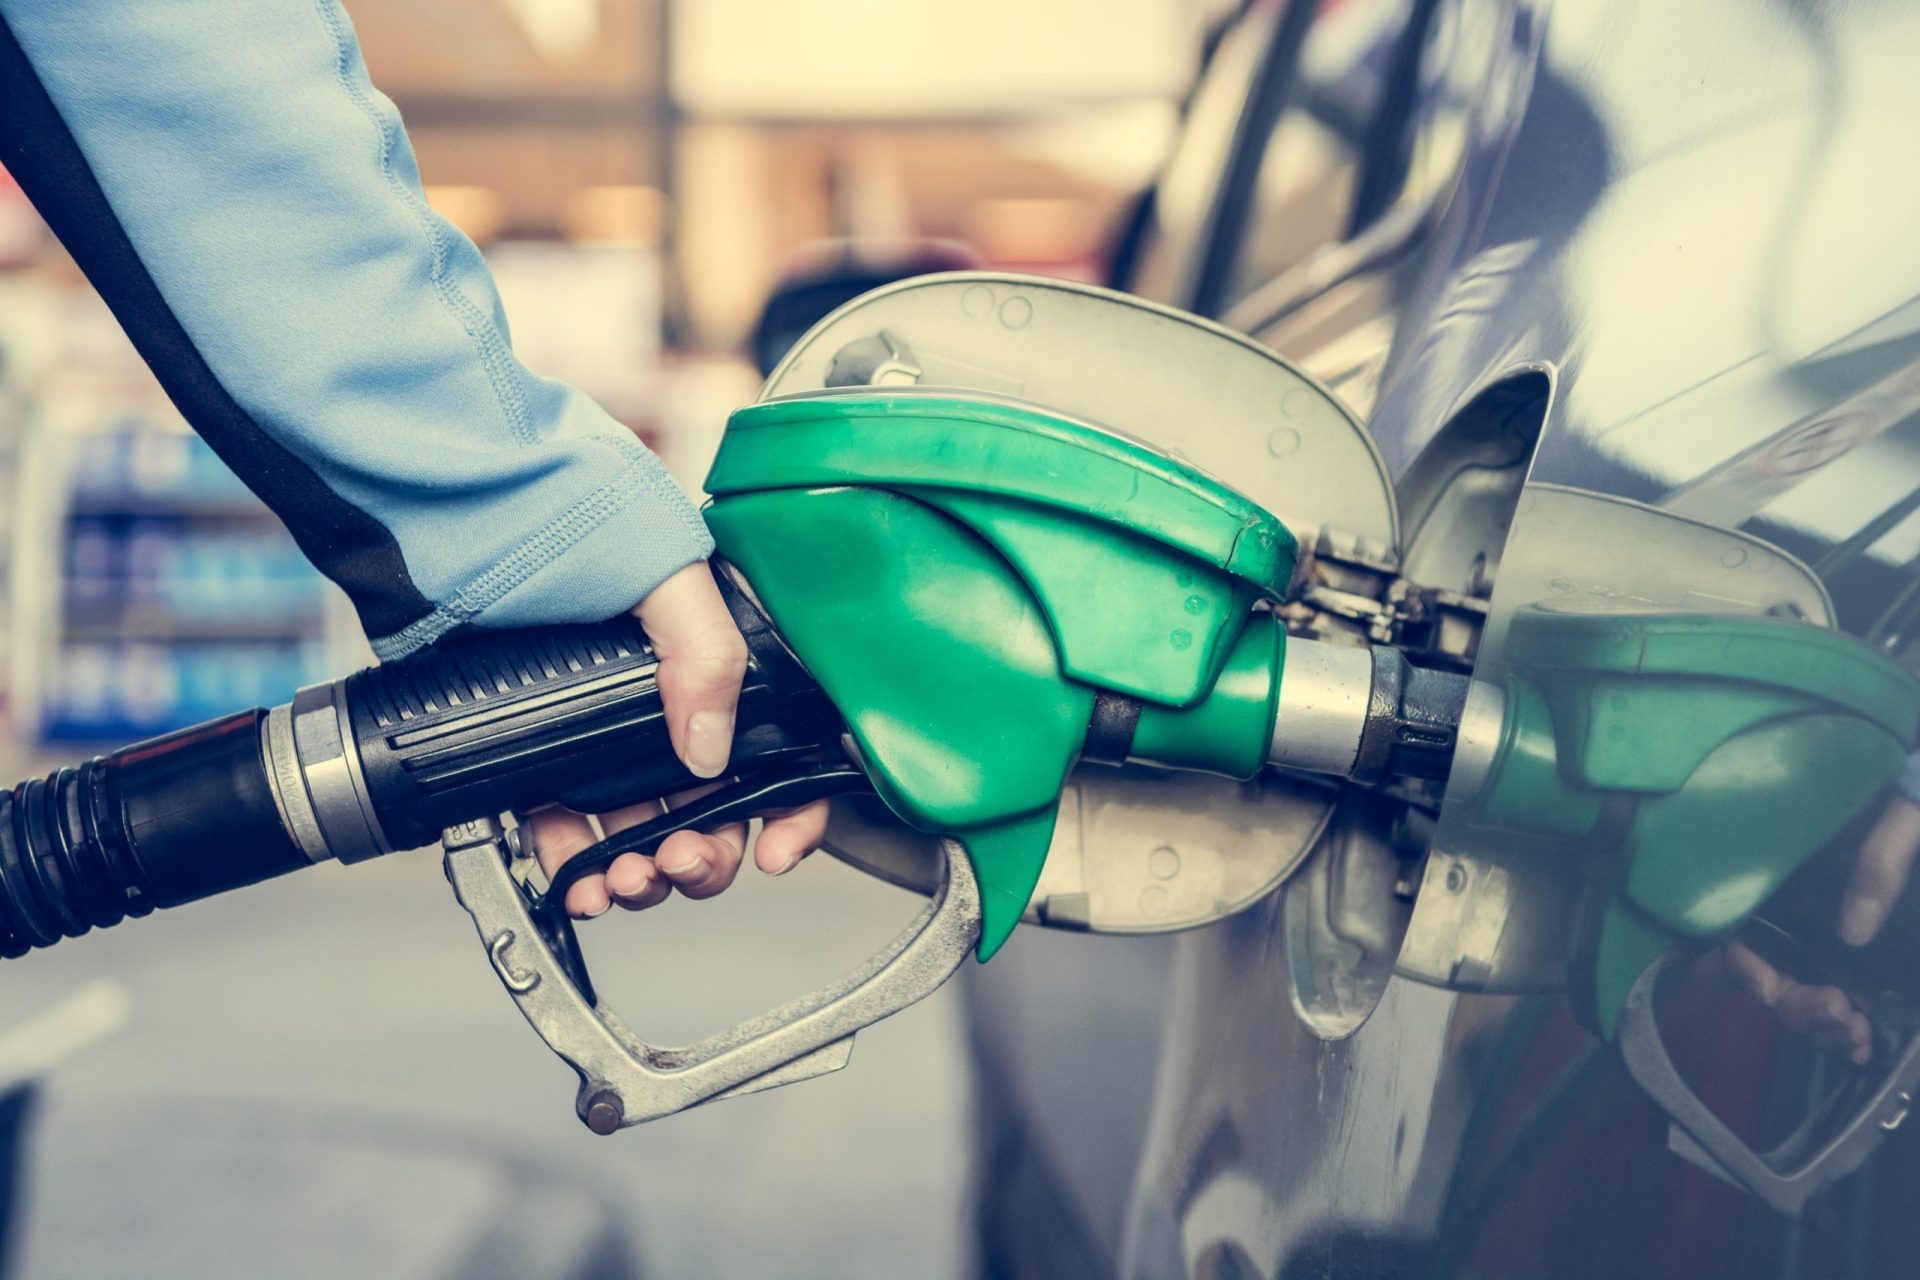 Preços dos combustíveis vão descer a partir de segunda-feira